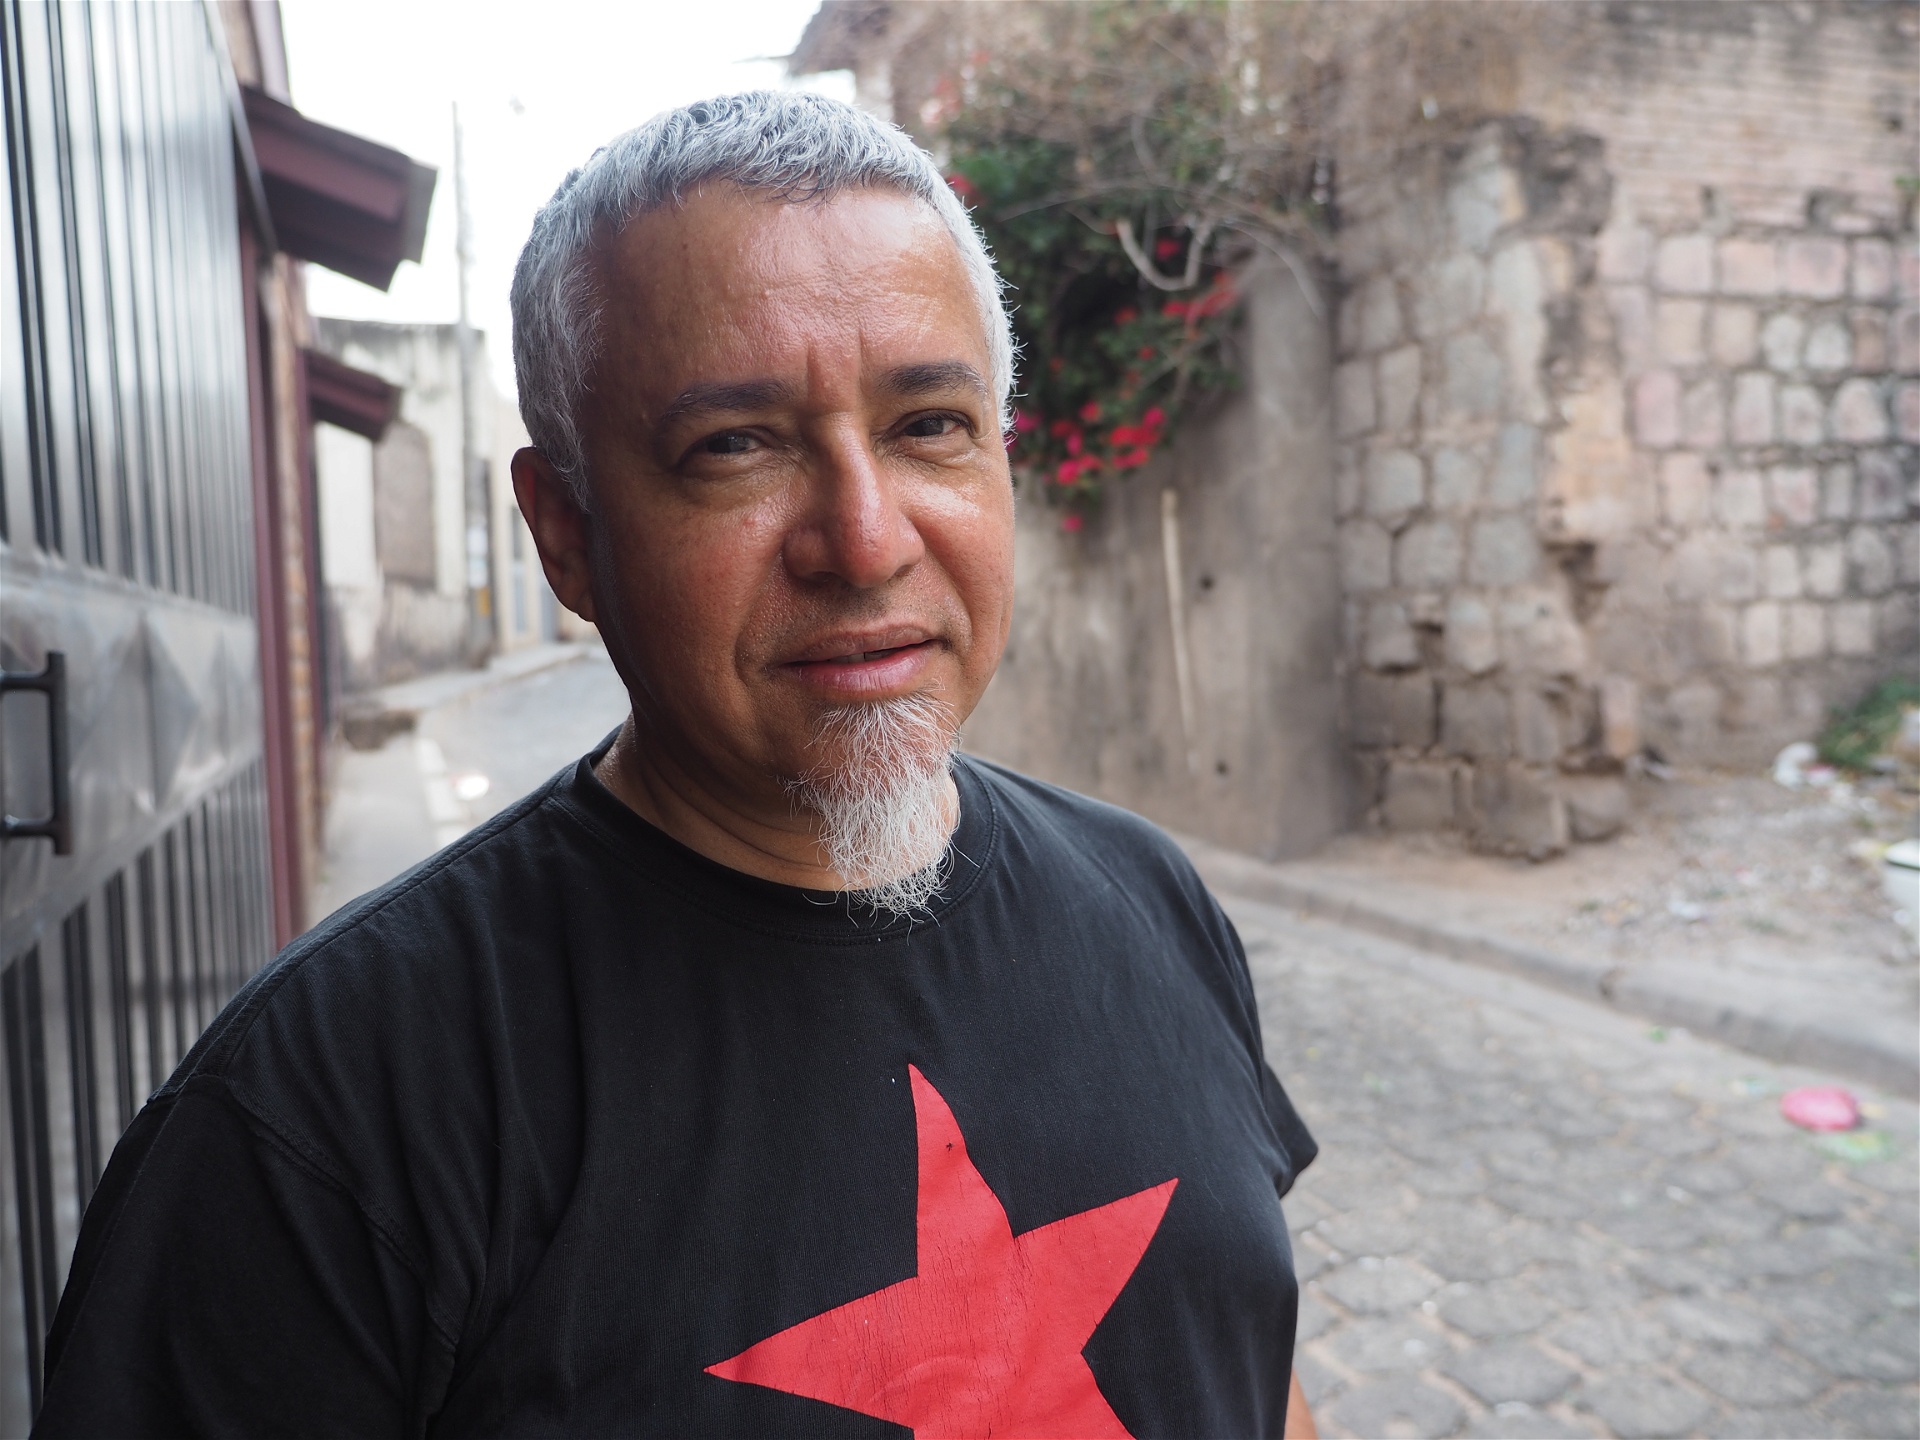 Musikern Alexis Palencia, som kallar sig vänsterorienterad, anser att också vänstern i Honduras är del av det postkoloniala arvet: ”Den utvecklar inte egna tankar och har en konservativ syn religion och kultur”, säger han.